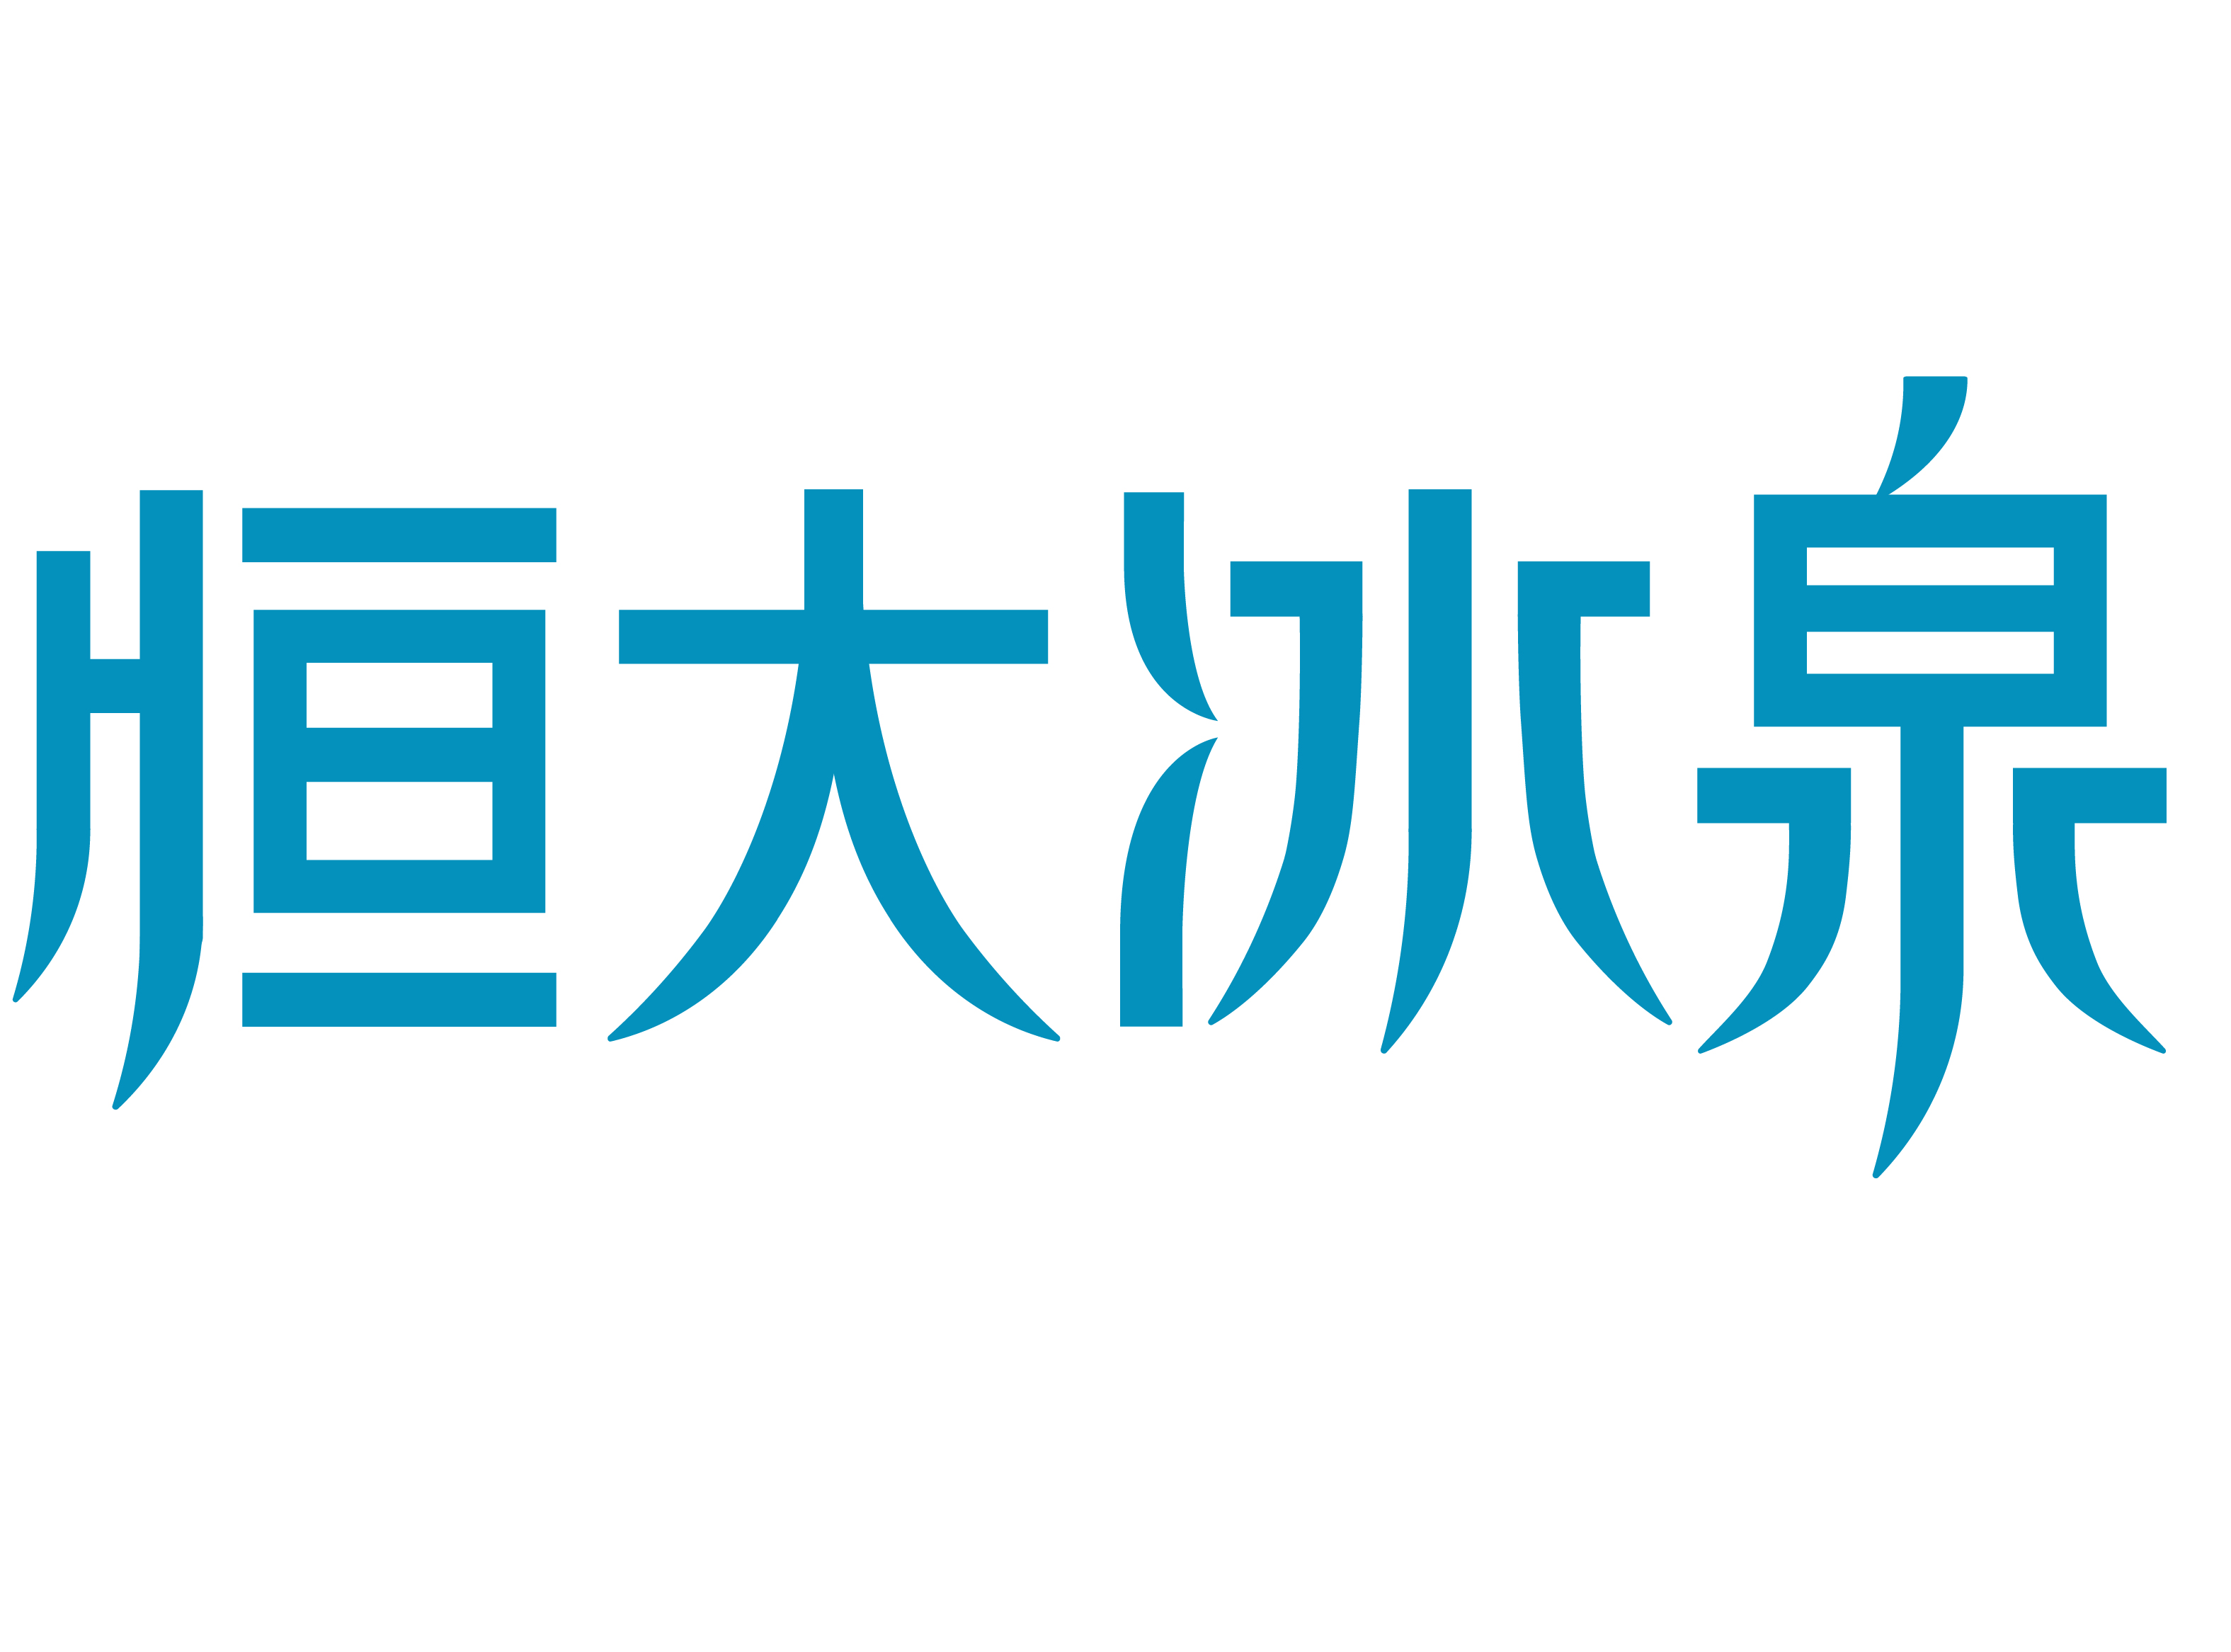 恒大冰泉logo图片